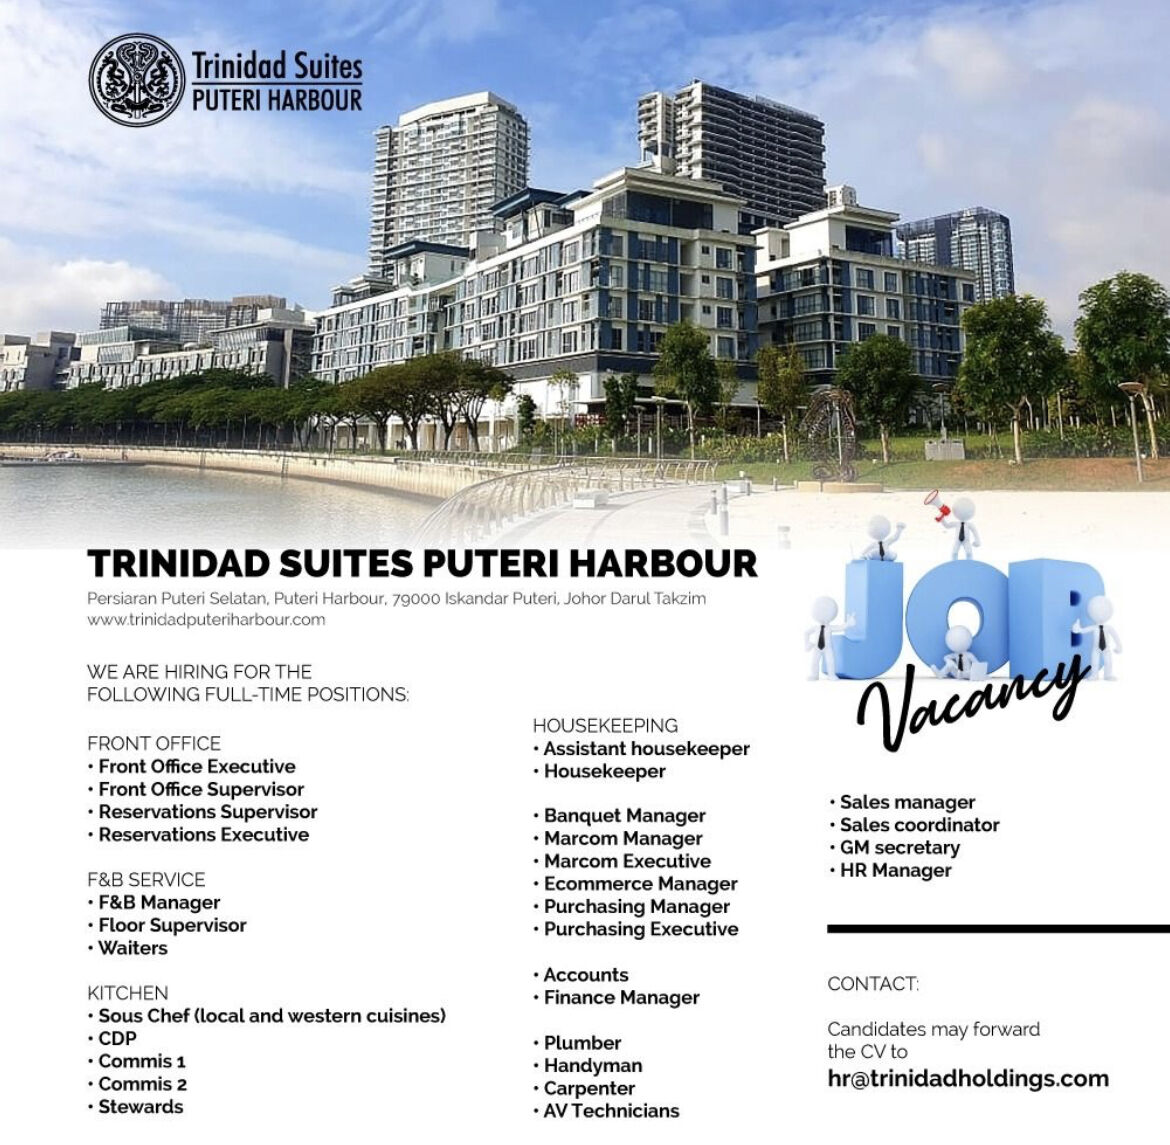 Trinidad suites puteri harbour